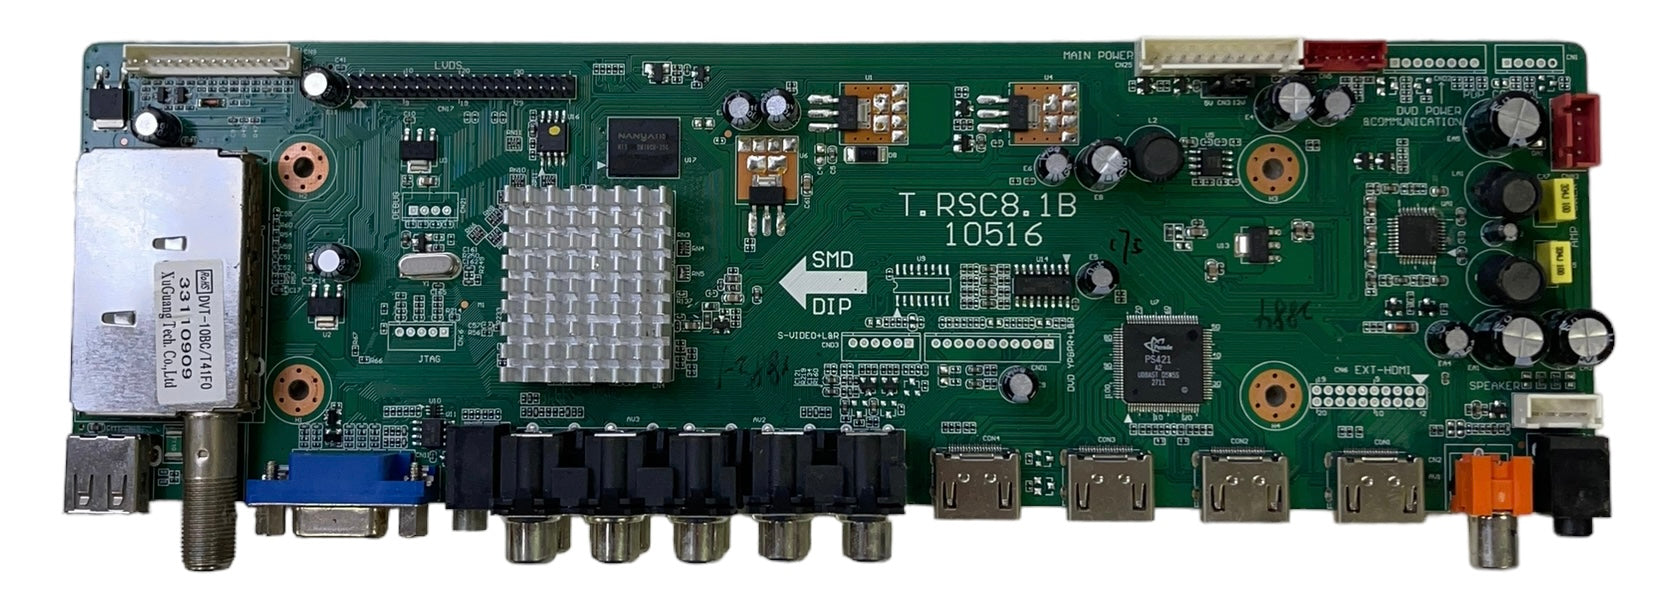 RCA FRE01TC81XLNA0-C1 (T.RSC8.1B 10516) Main Board for 32LA45RQ